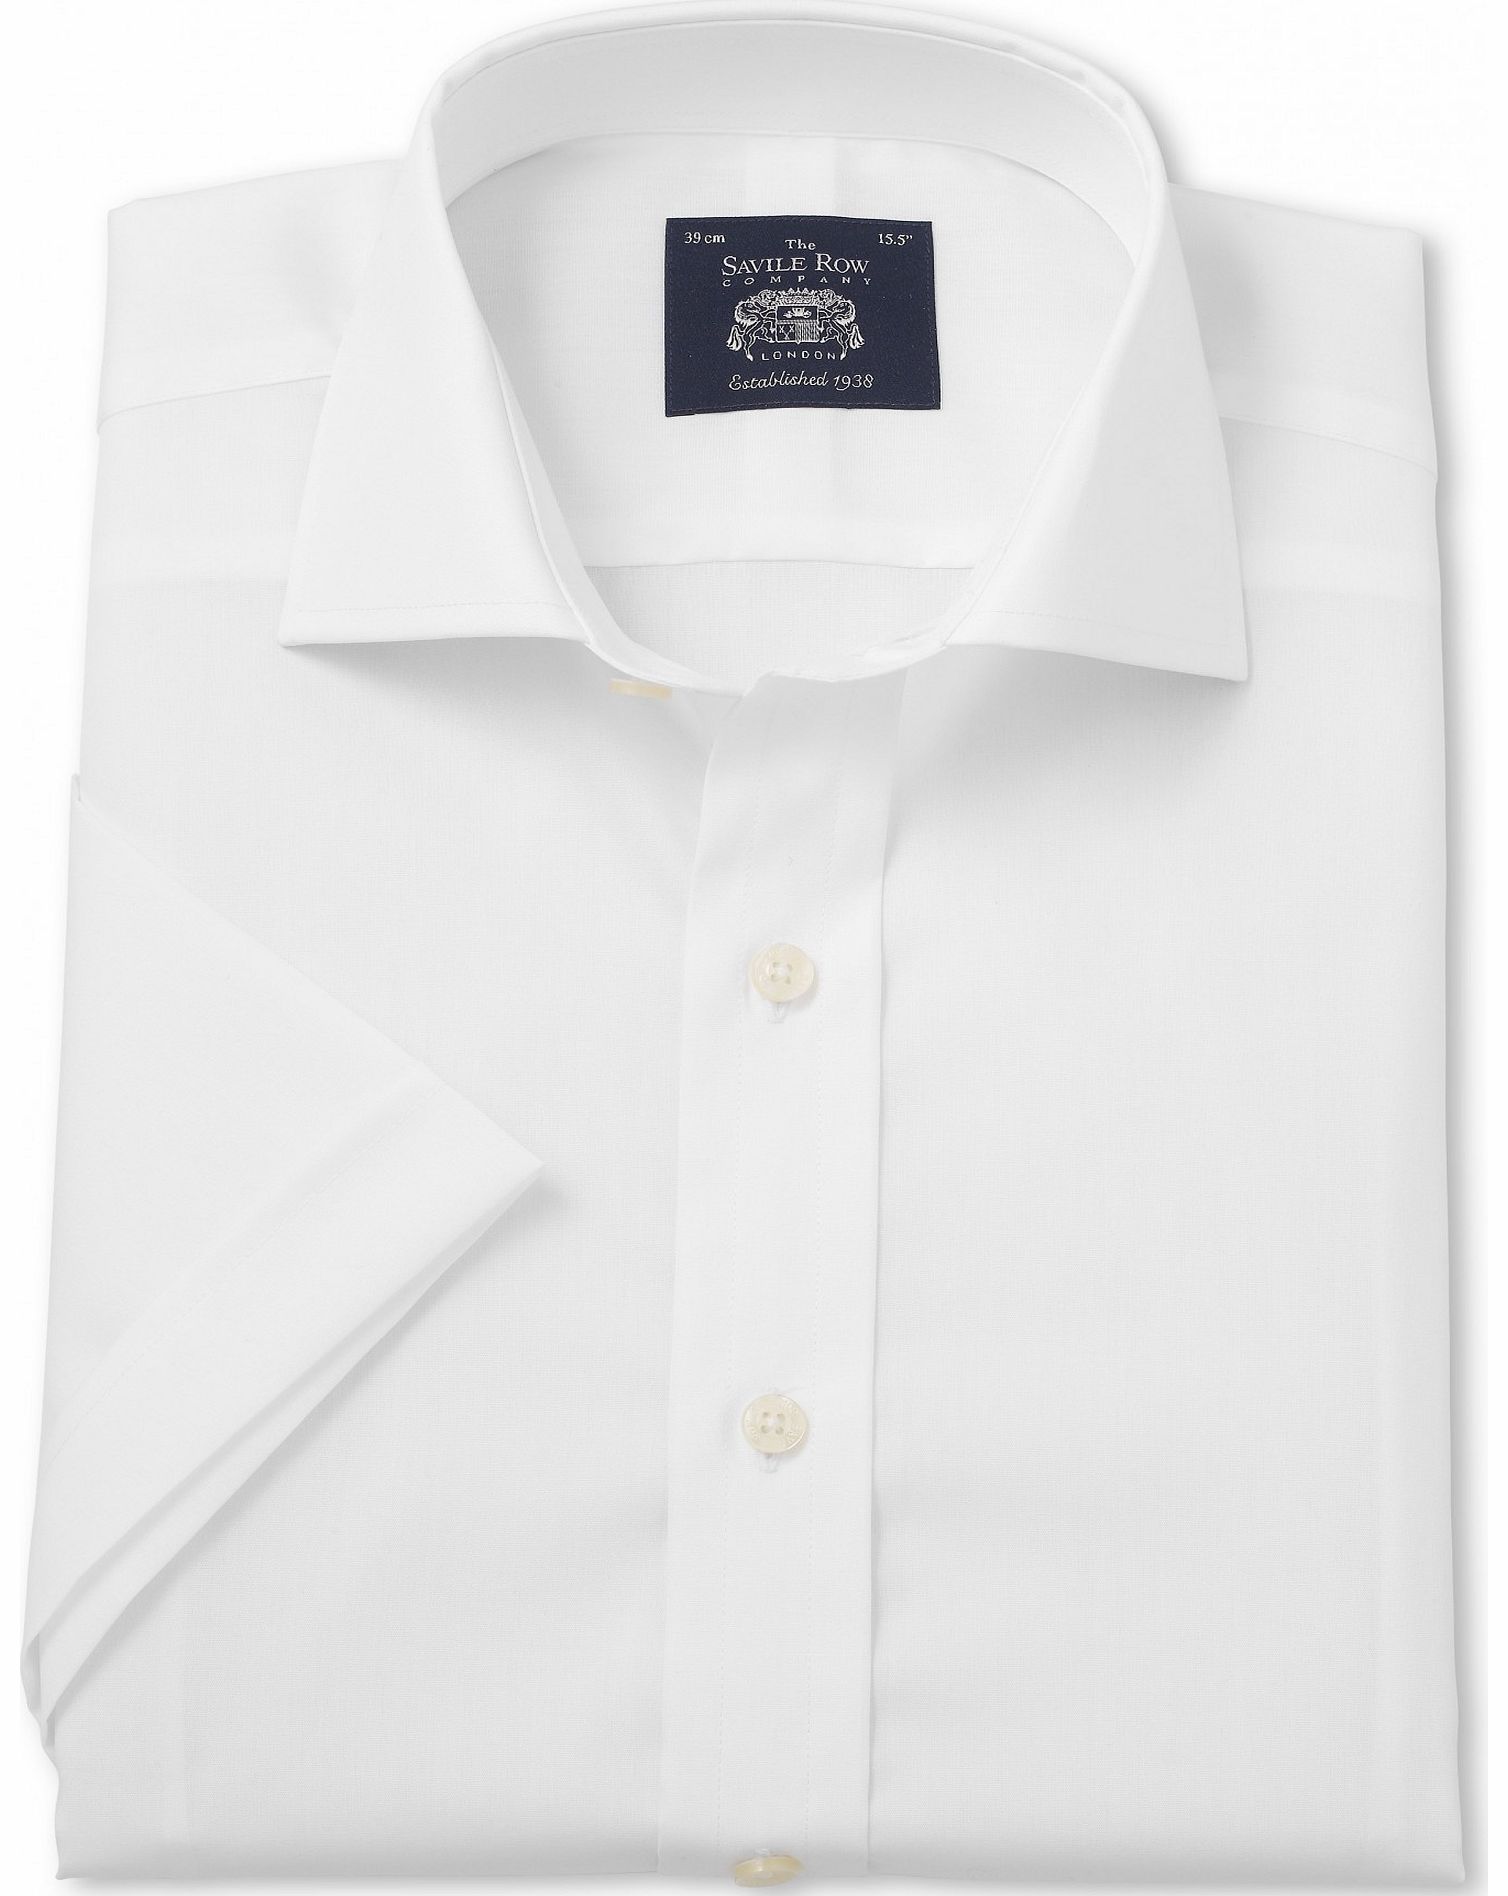 White Slim Fit Short Sleeve Shirt 15 1/2`` Short